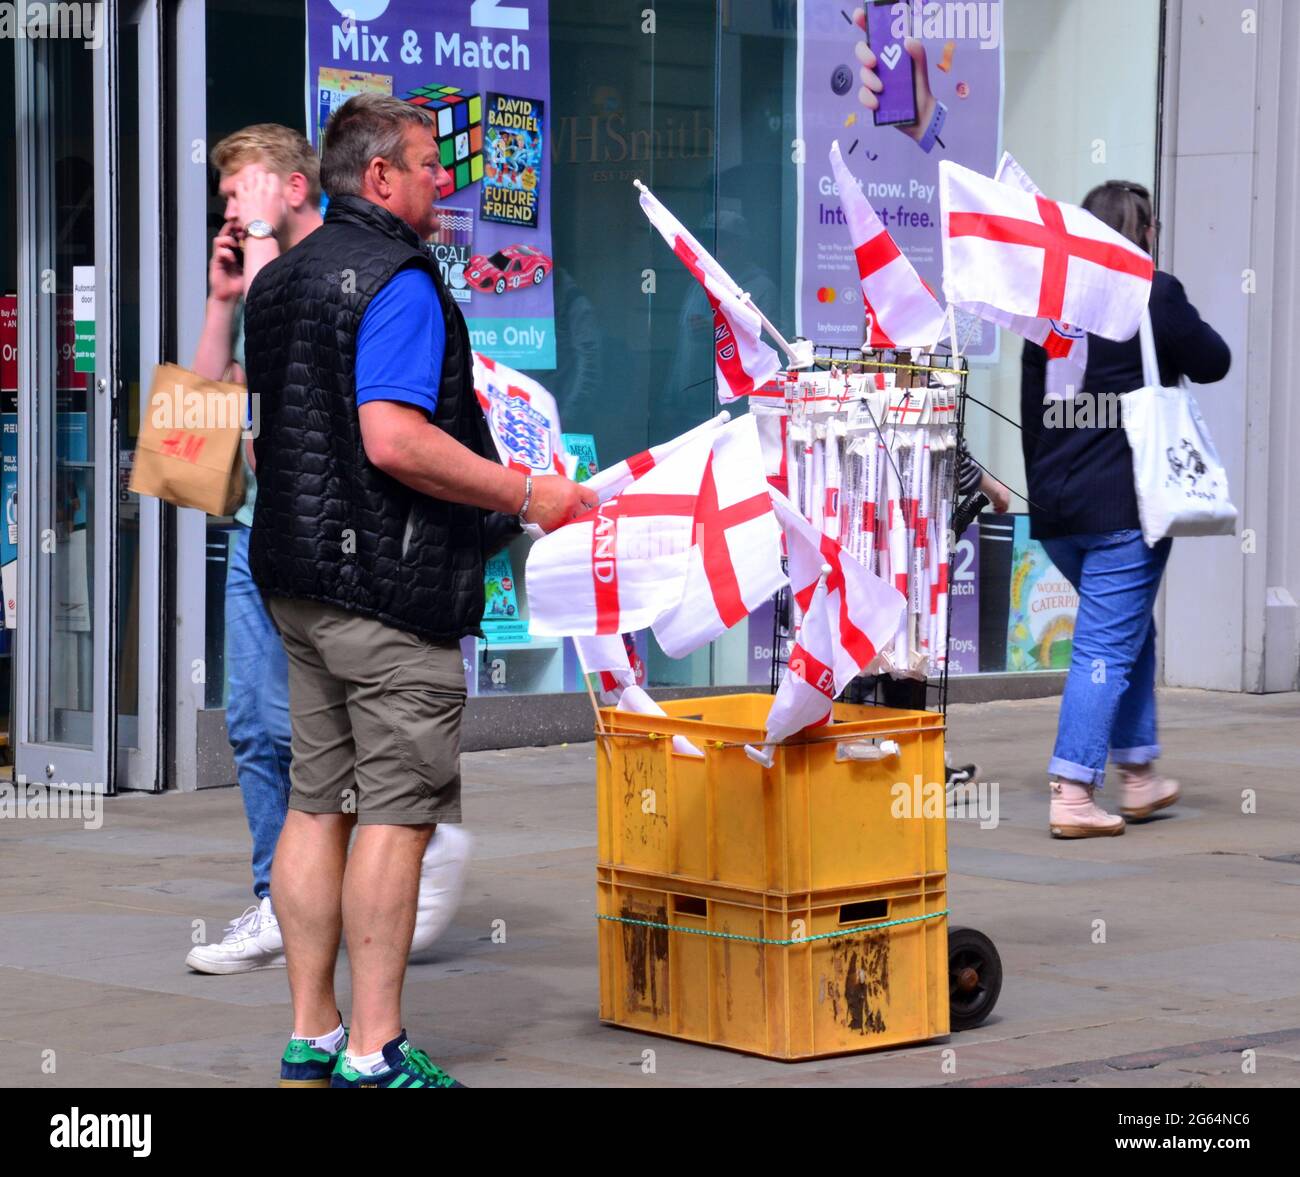 Uomo con carrello che vende bandiere d'Inghilterra nel centro di Manchester, Inghilterra, Regno Unito, 2 luglio 2021, Prima della partita di calcio Inghilterra / Ucraina il 3 luglio. Foto Stock